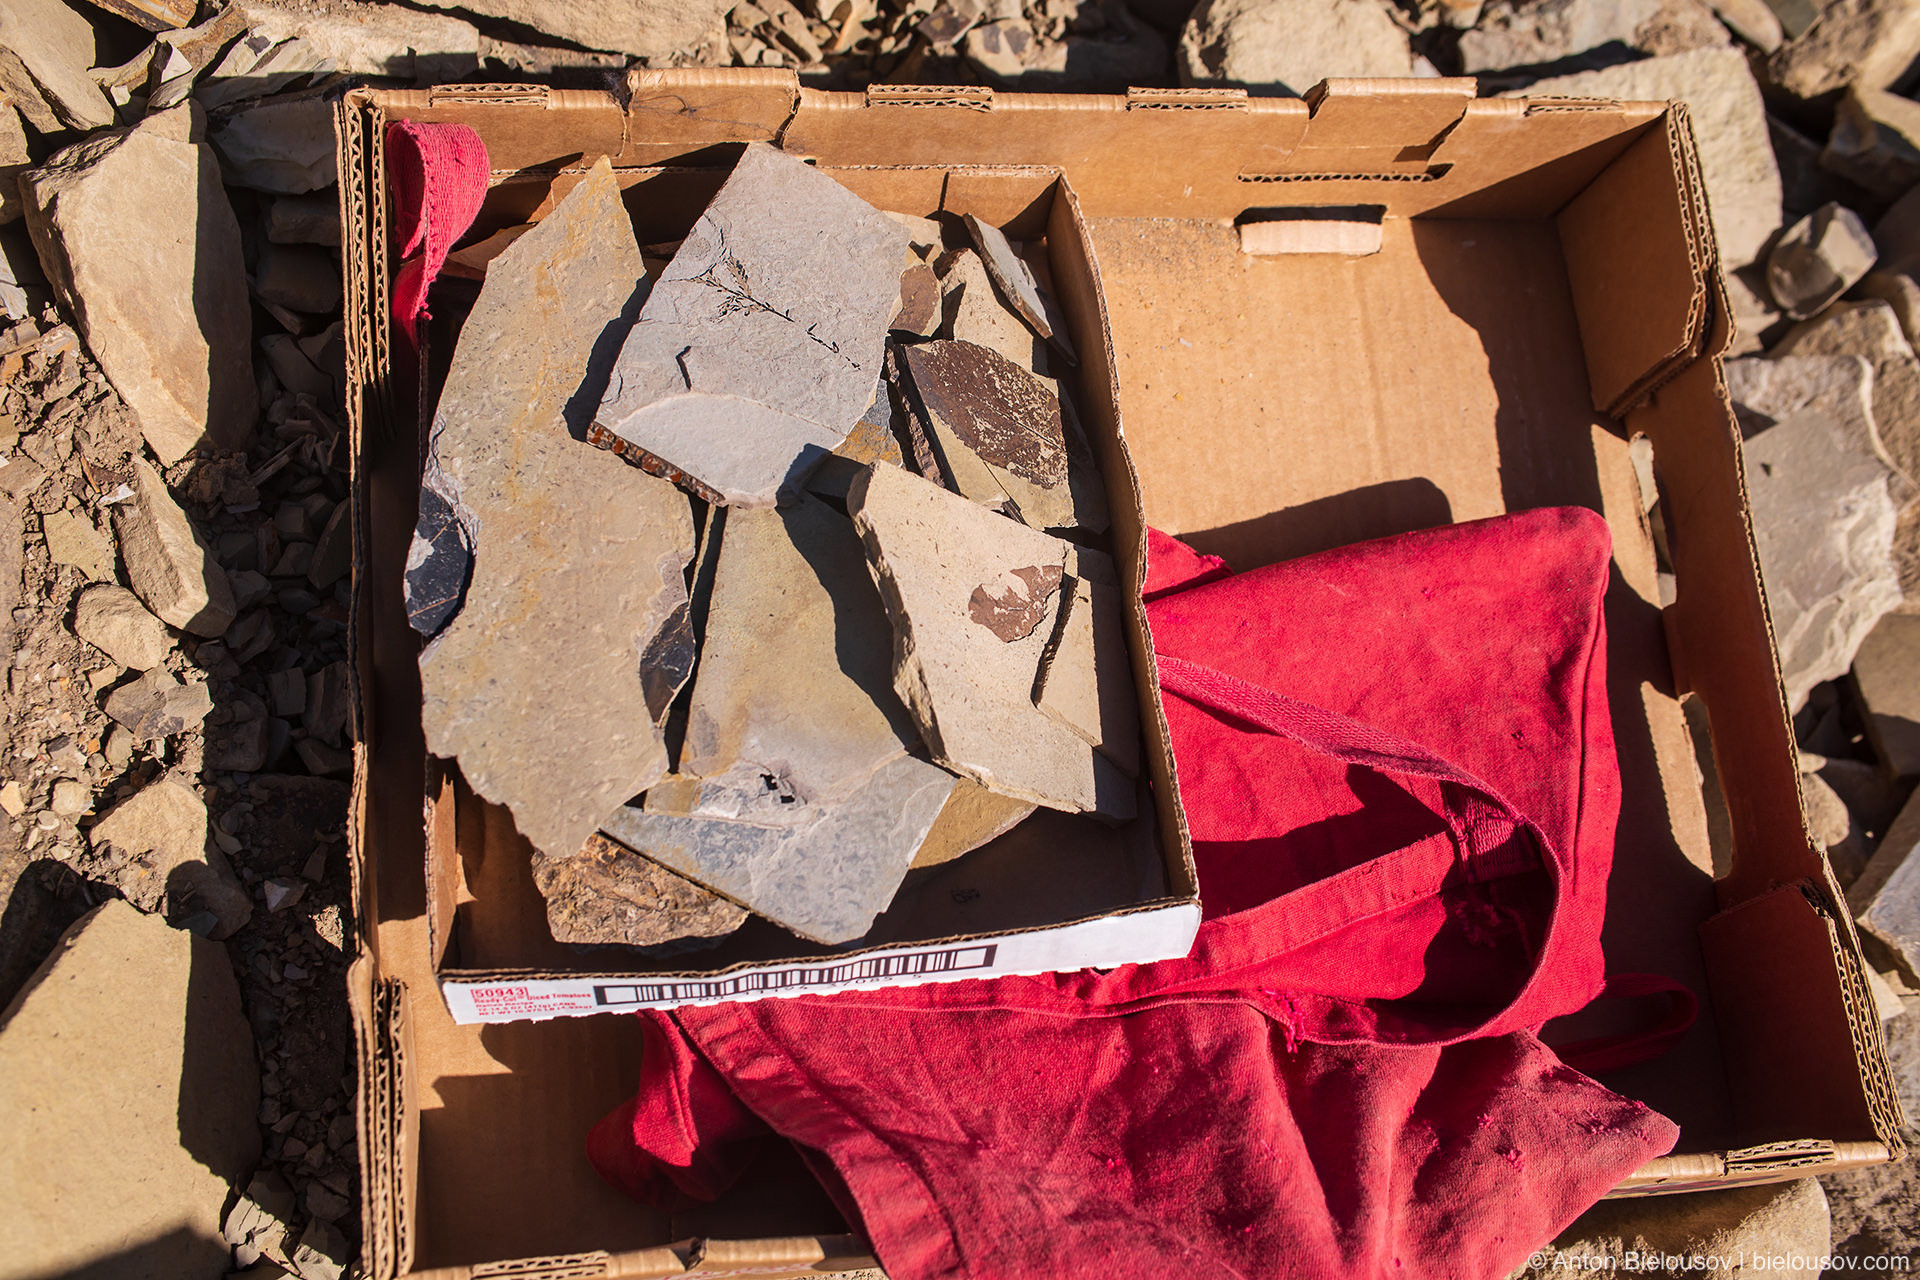 Box of fossiliz — Stonerose fossils site, Republic, WA